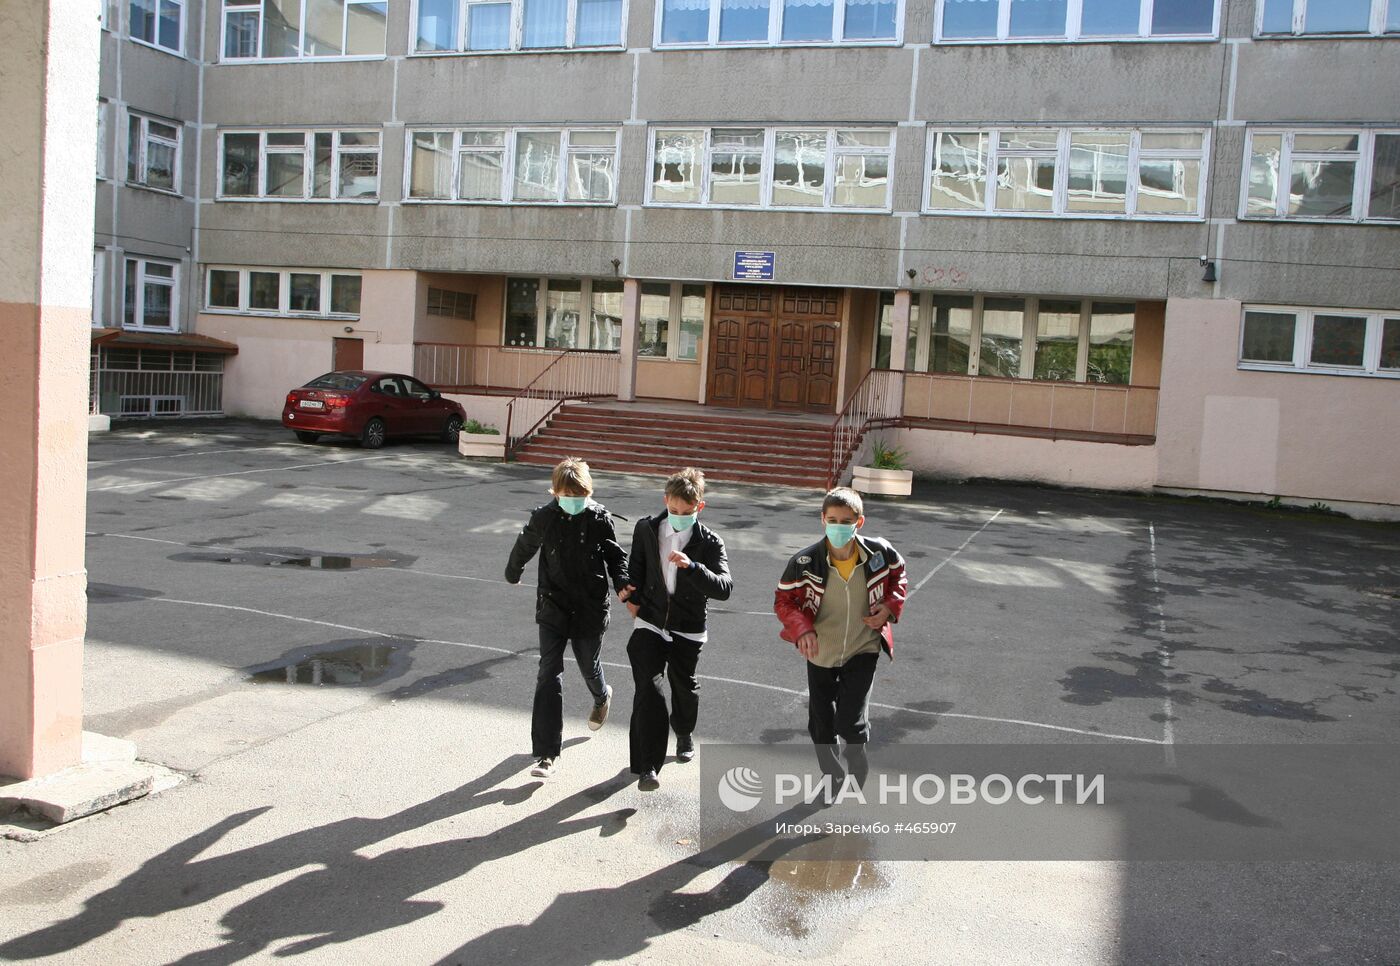 Школа №30 в Калининграде закрыта на карантин из-за гриппа А/H1N1